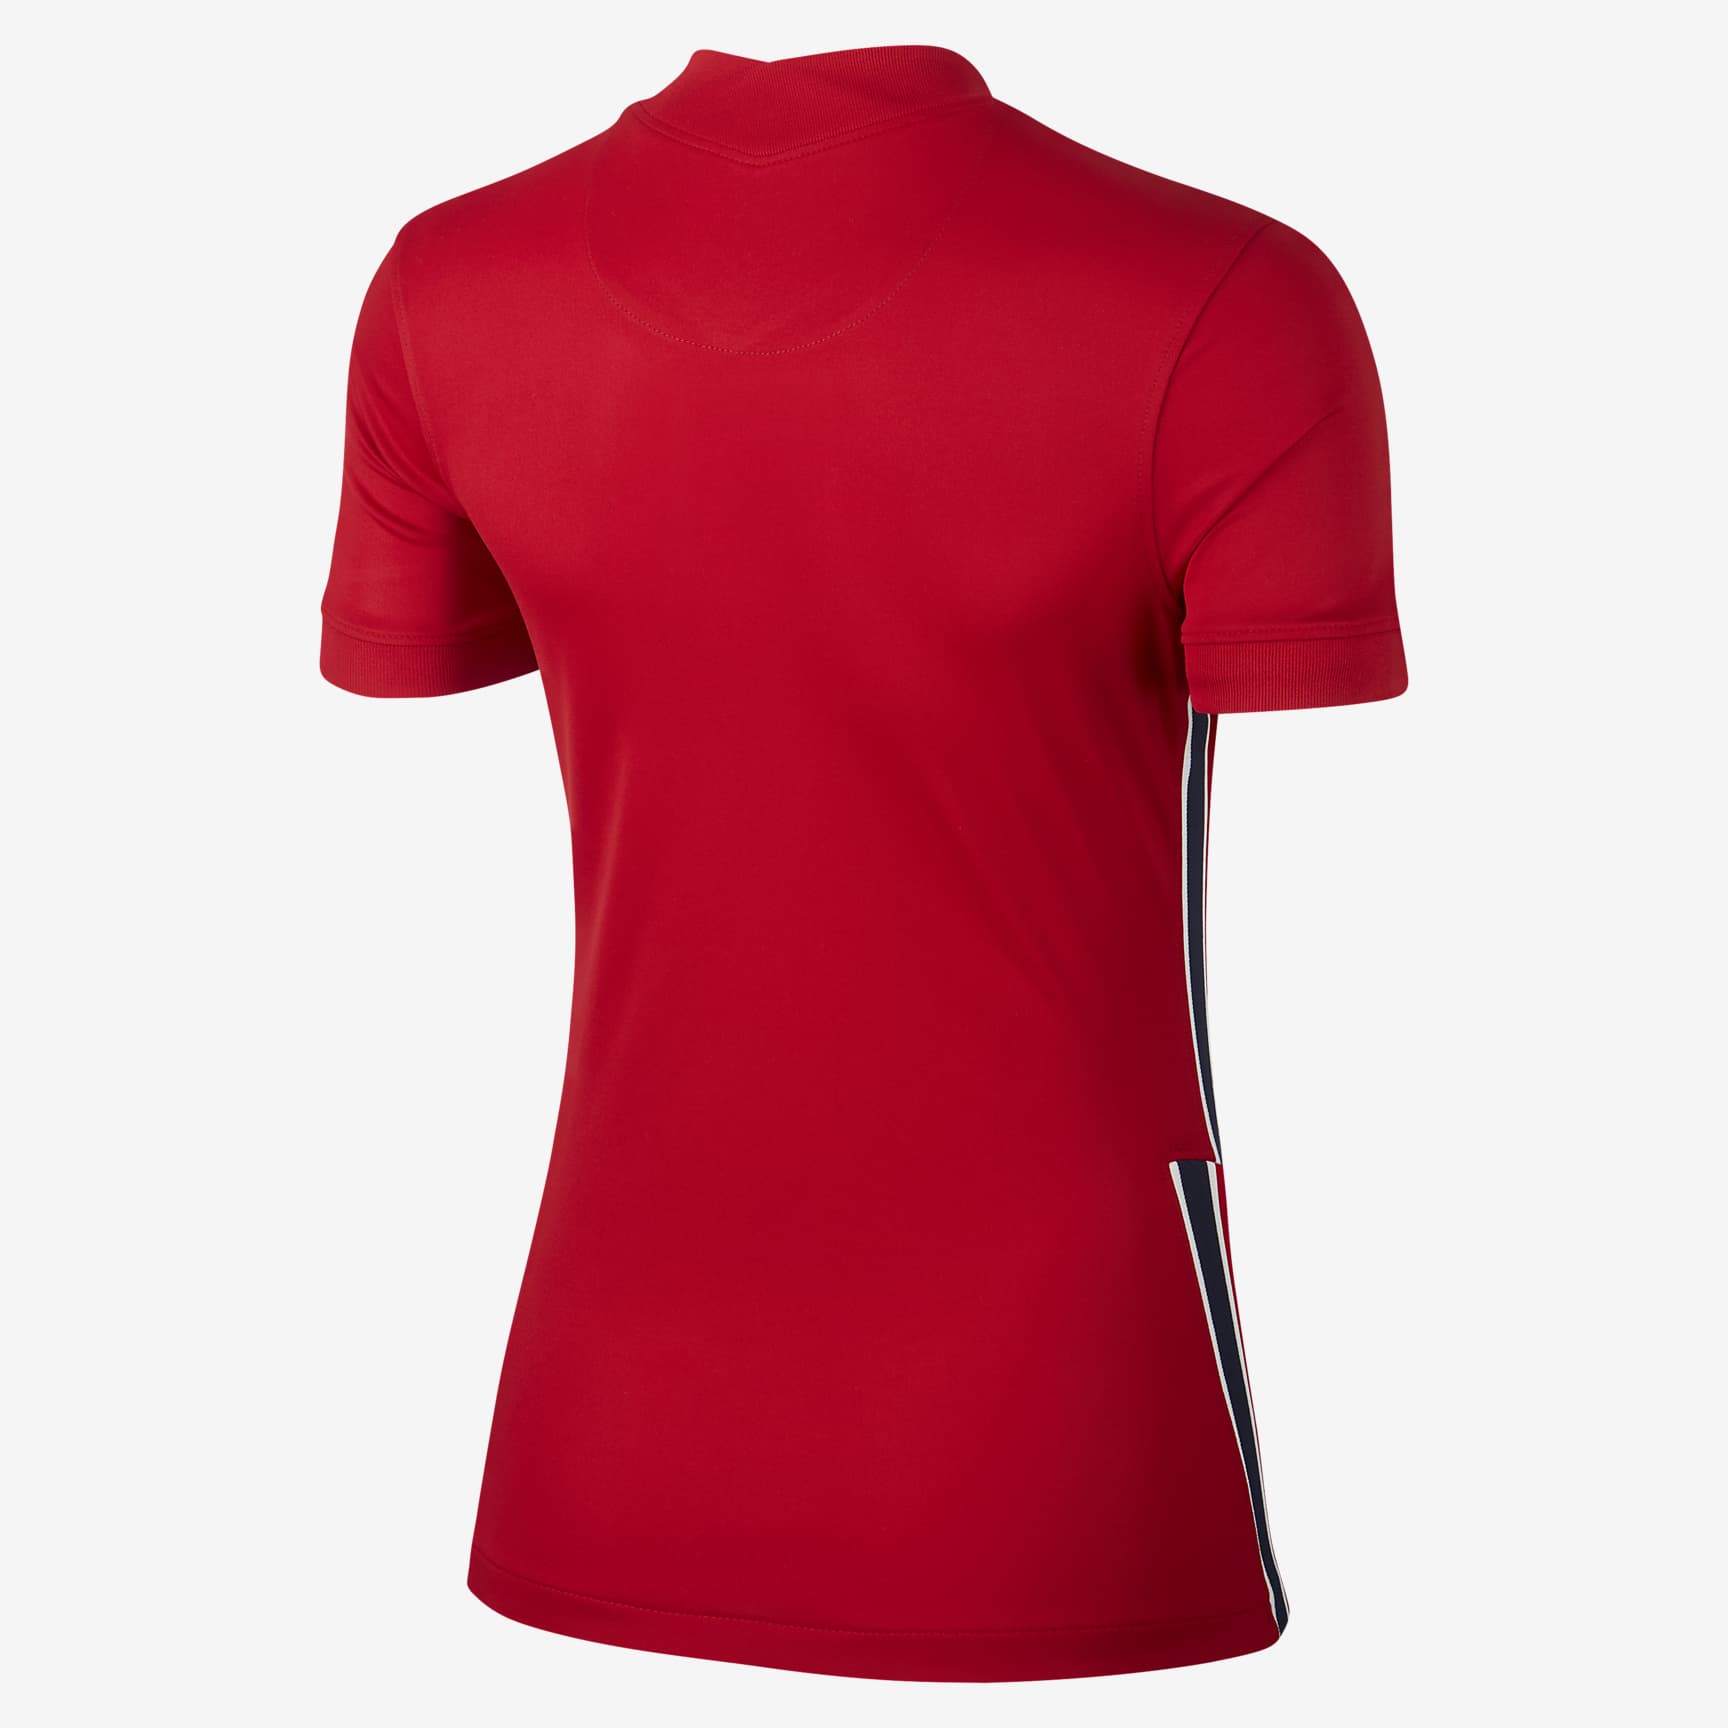 Camiseta de fútbol de local para mujer Stadium de Noruega 2020. Nike.com